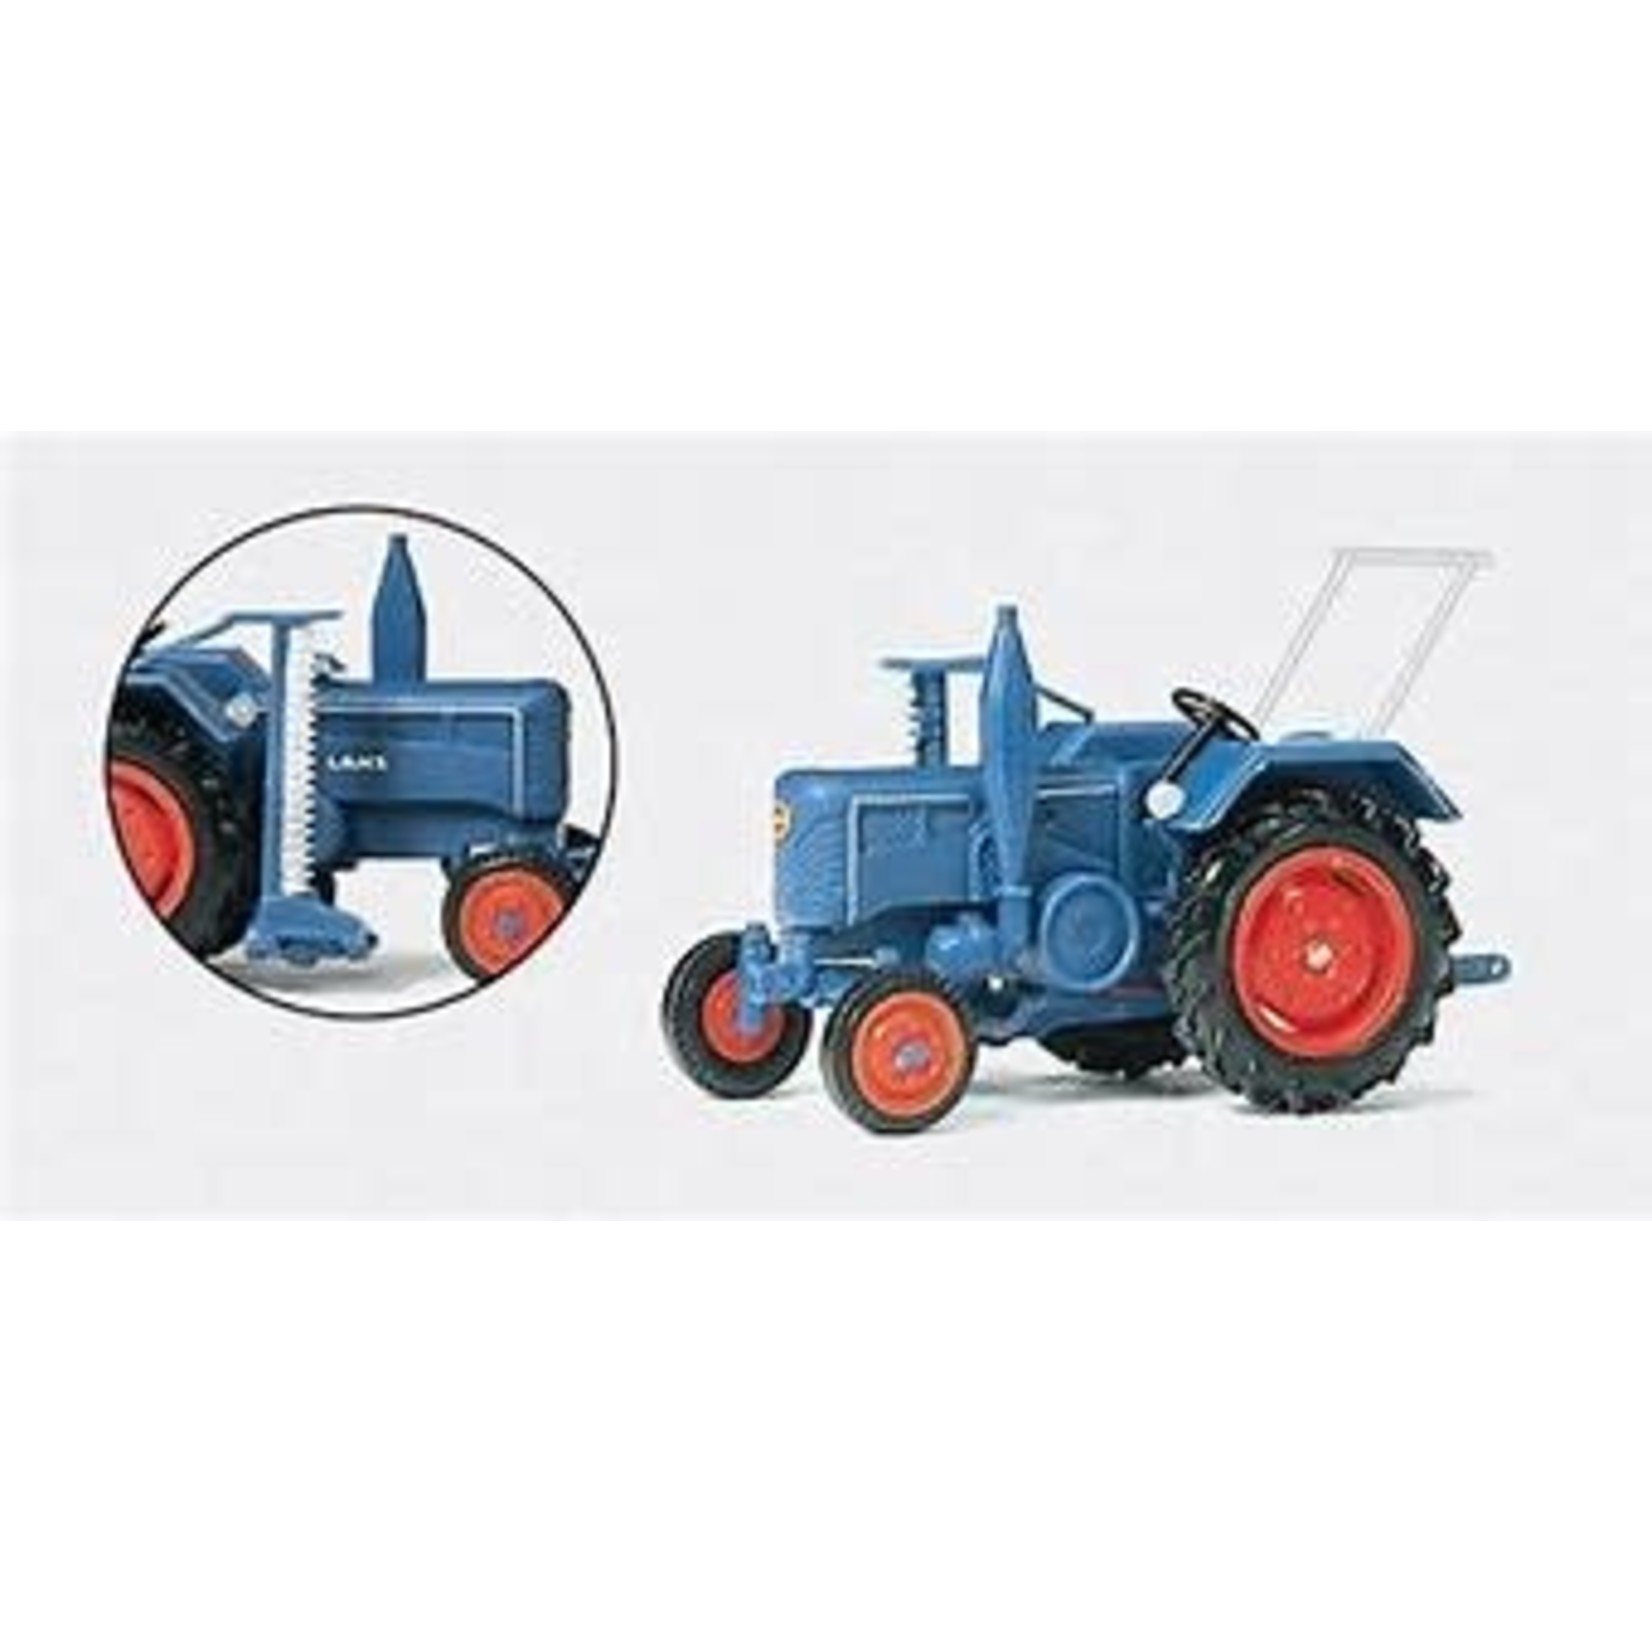 Preiser Blue Farm Tractor - Preiser HO